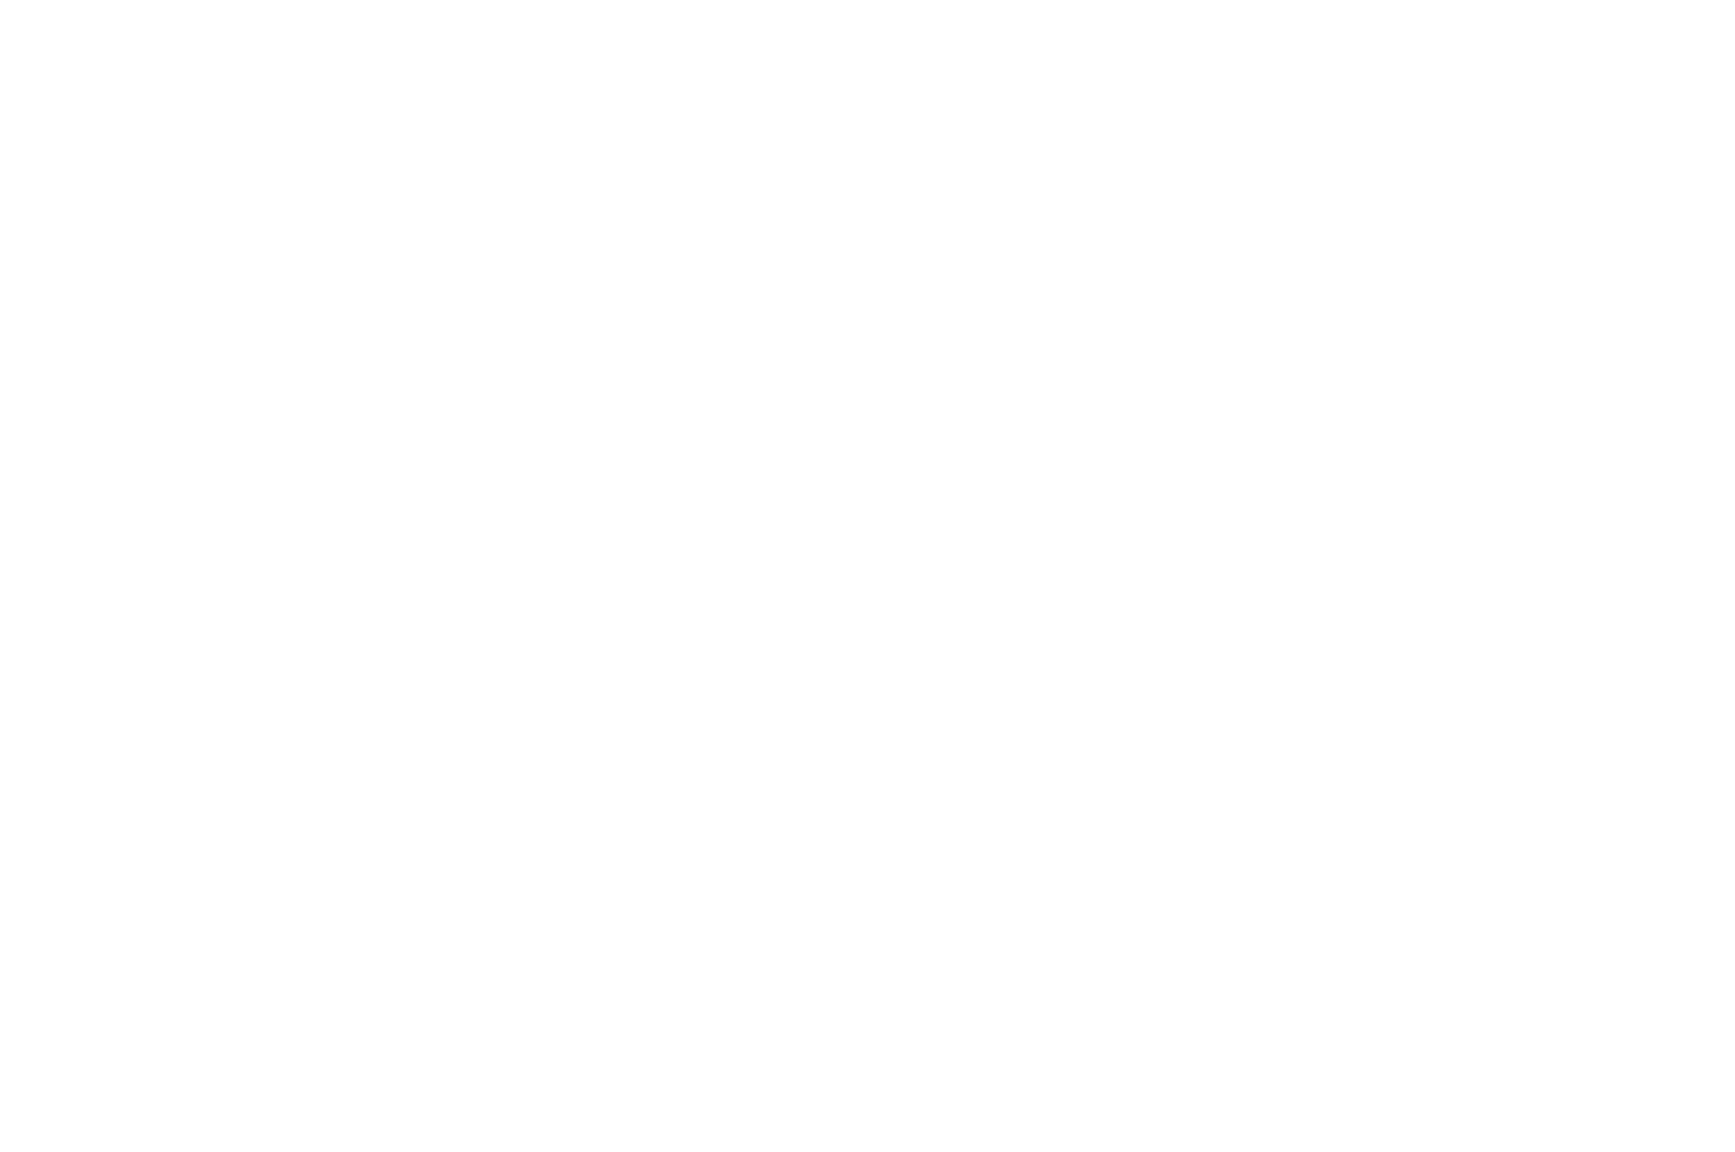 BEST MUSIC VIDEO - Australia Film Festival - 2022